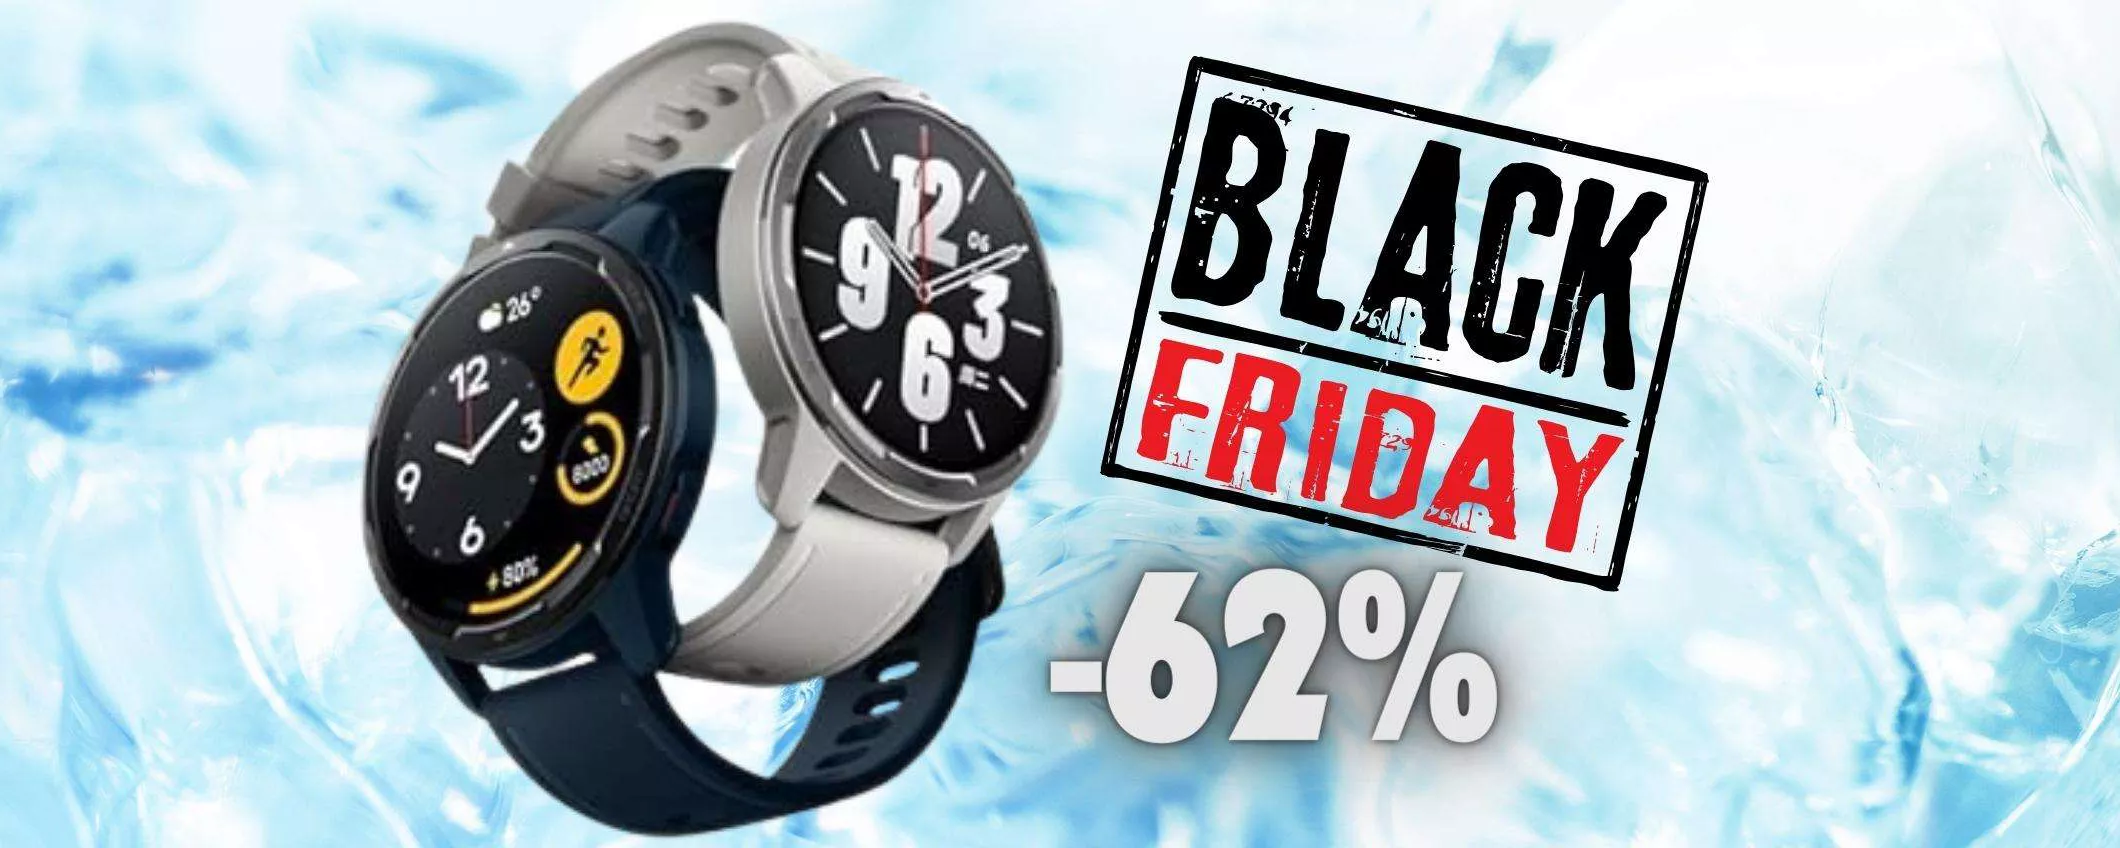 Xiaomi Watch S1 Active in OFFERTA al 62% per il Black Friday